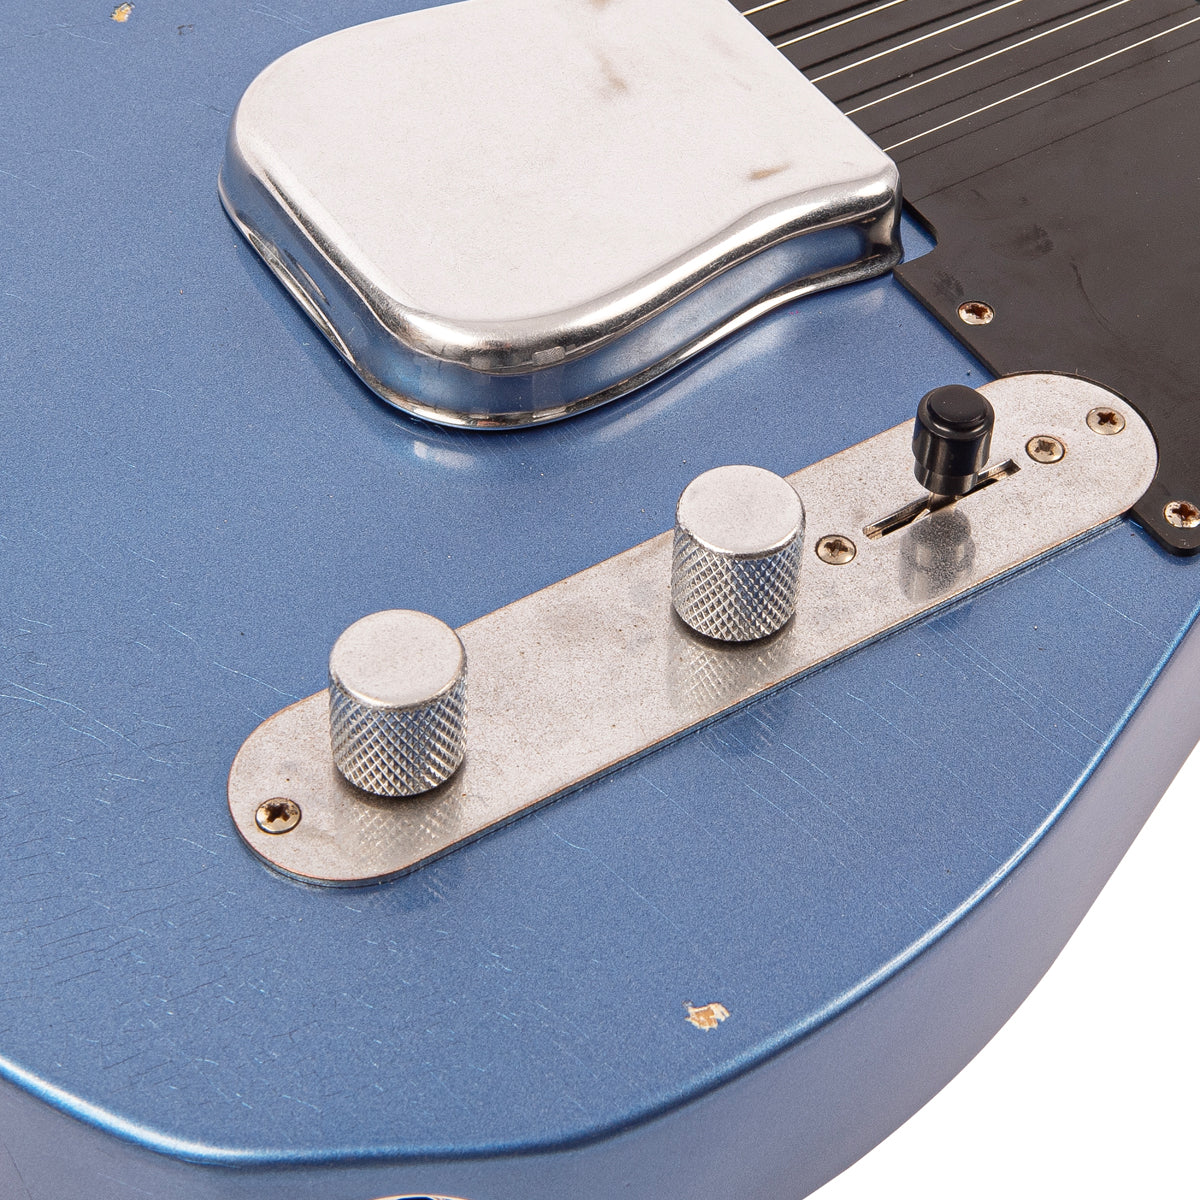 SOLD - Vintage V62 ProShop Unique ~ Cracked Metallic Blue, Electric Guitars for sale at Richards Guitars.